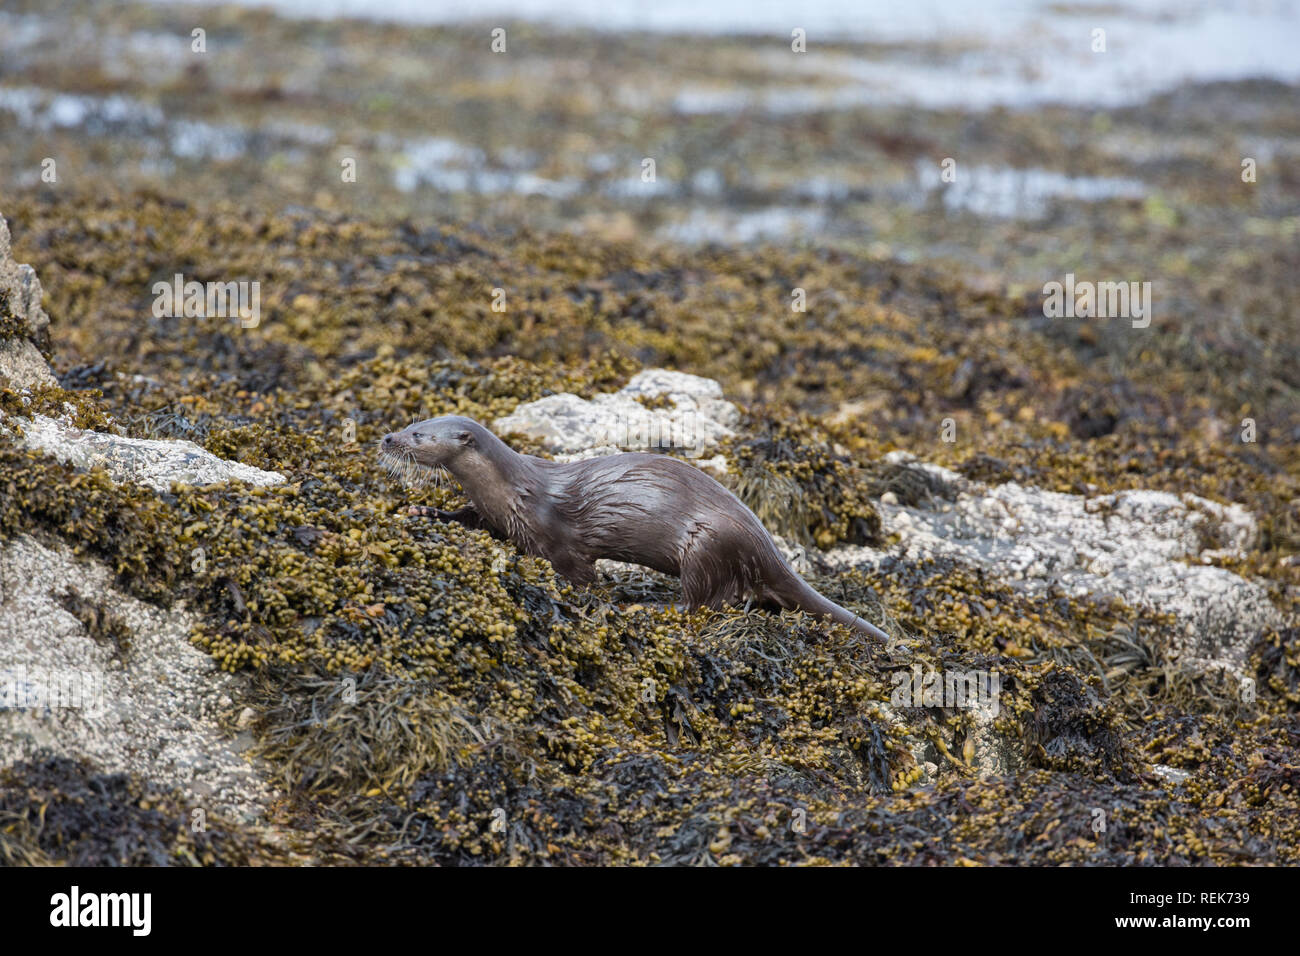 Eurasische Fischotter (Lutra Lutra). Bewegung, auf der Suche nach Nahrung unter braunen Algen am Strand intertidal Zone, die auf einem Mull Strand. Farbe getarnt. Schottland. Stockfoto